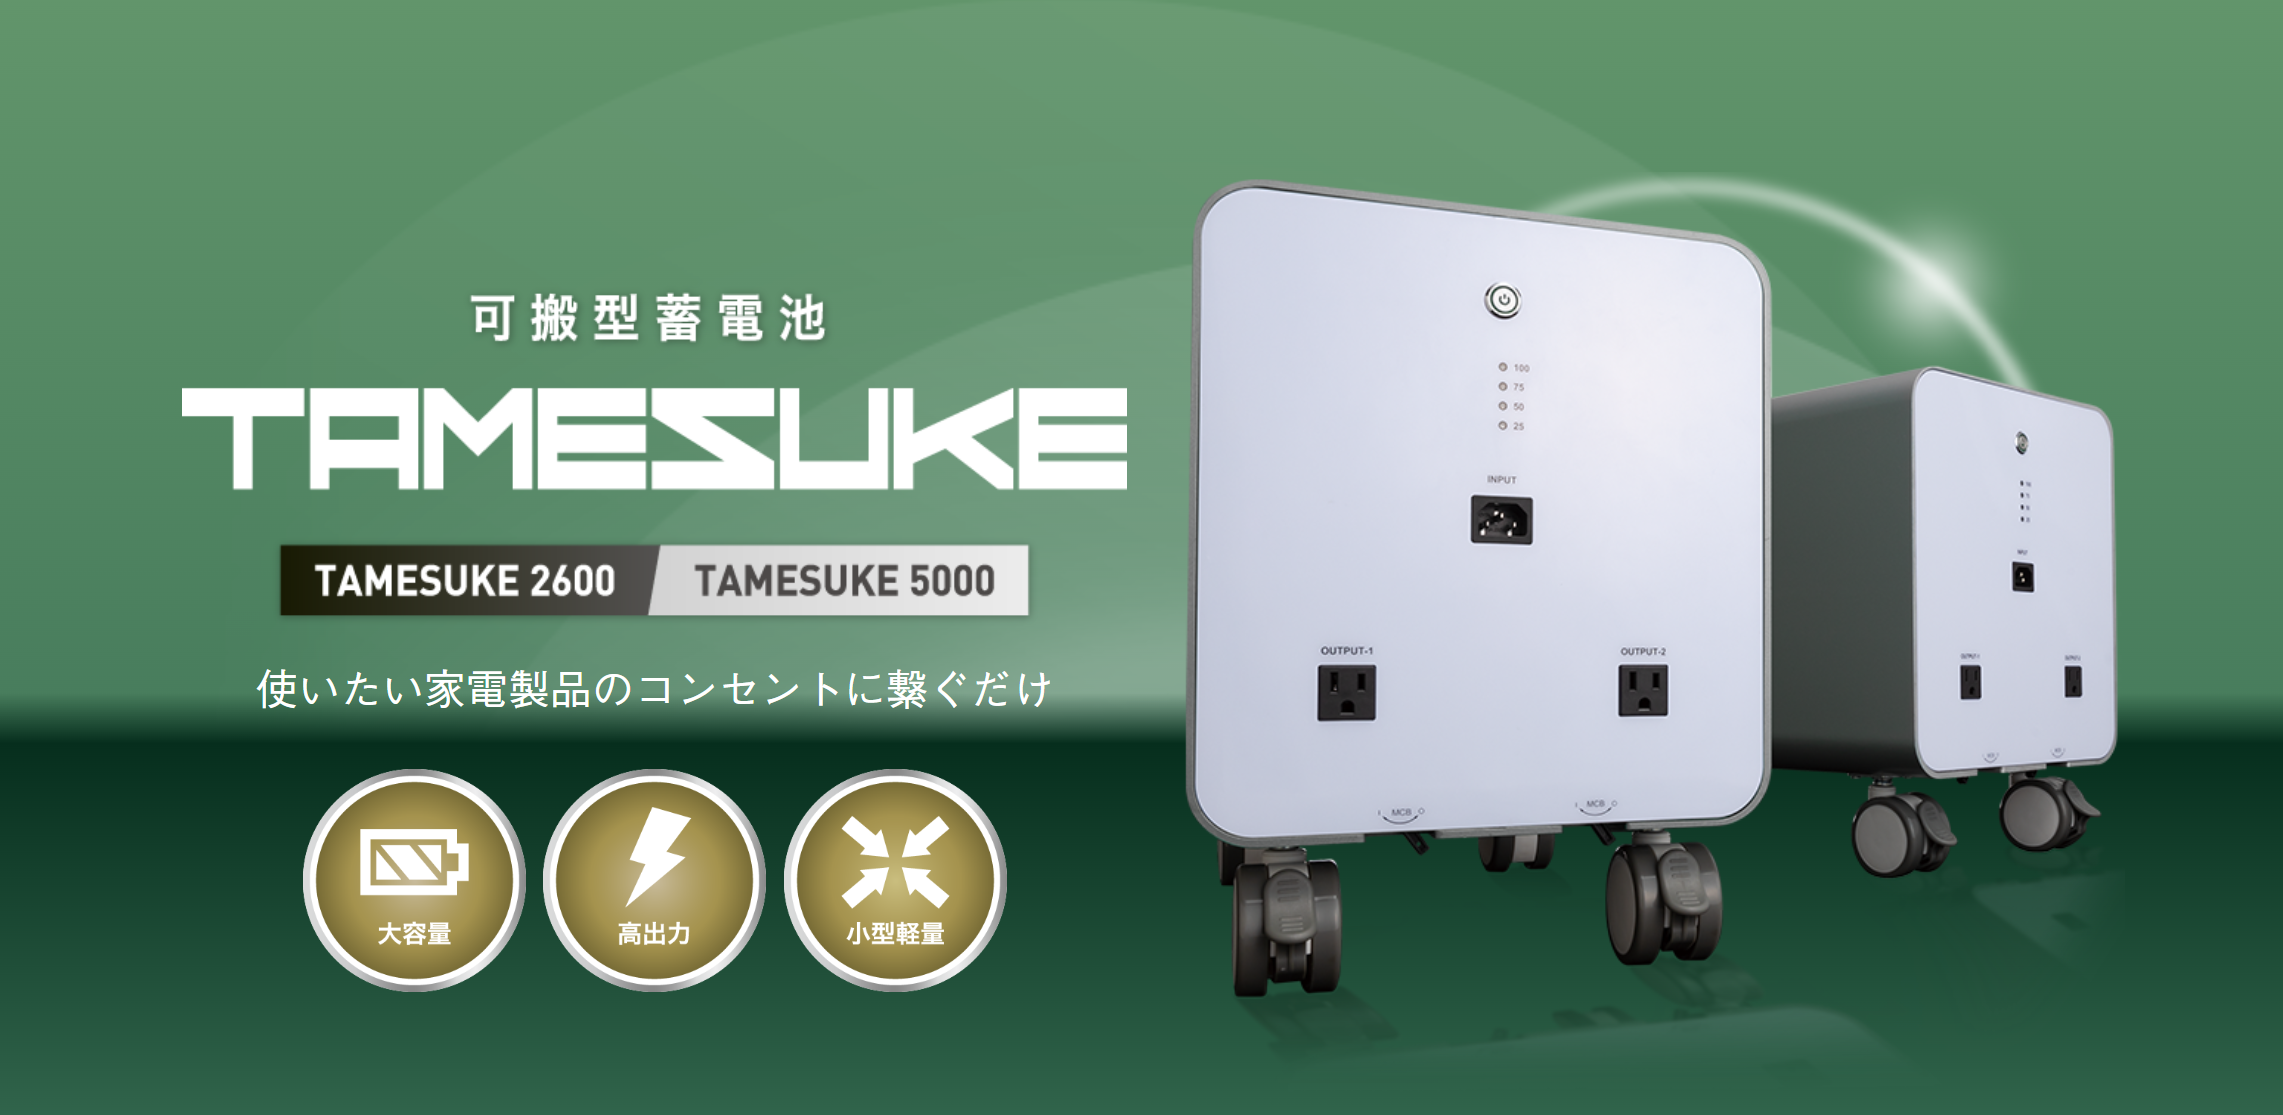 可搬型蓄電池「TAMESUKE」